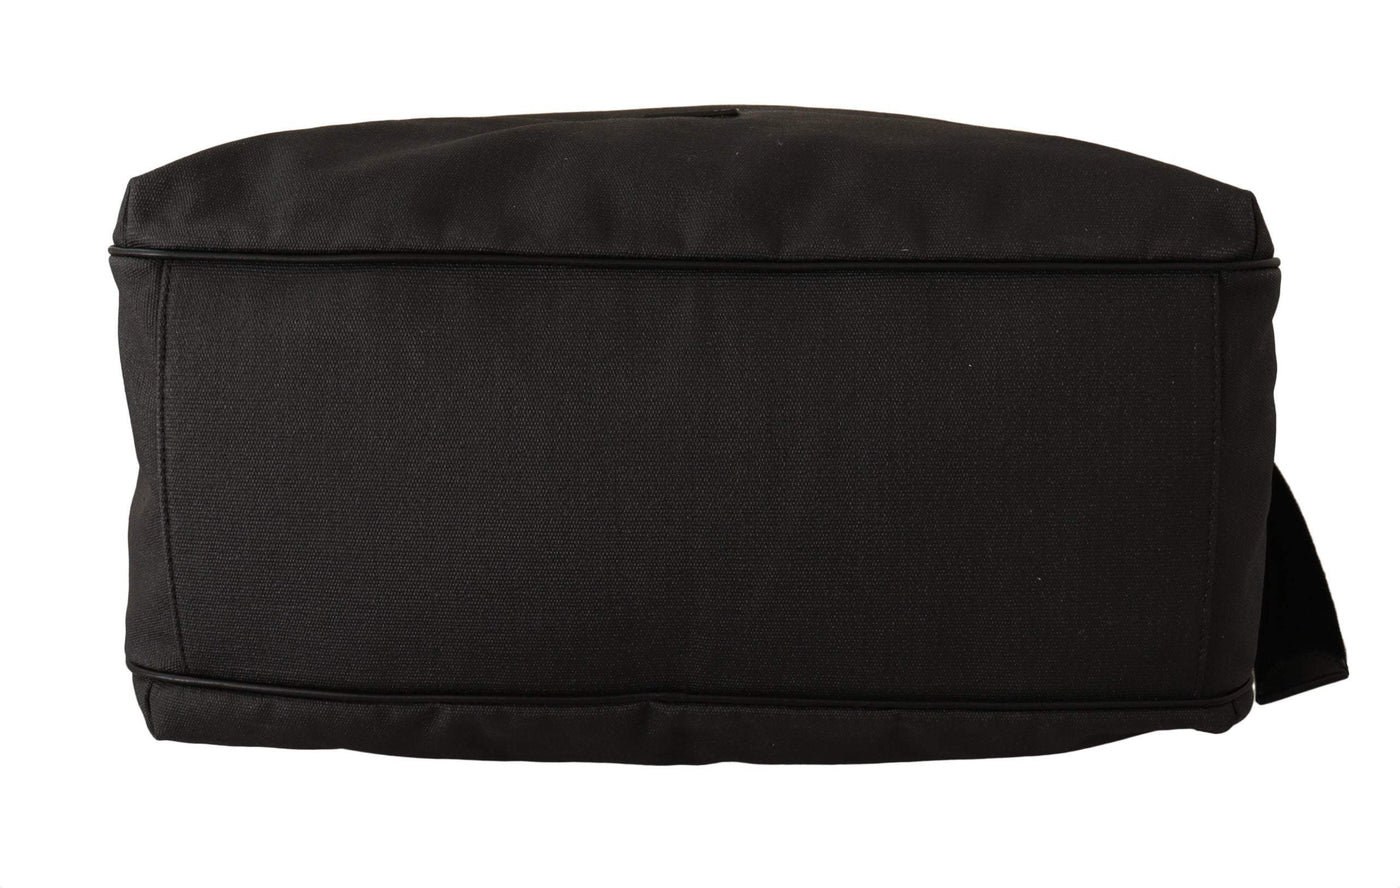 Dolce & Gabbana Black Denim Leather Shoulder Strap Messenger Bag #men, Black, Dolce & Gabbana, feed-1, Shoulder Bags - Men - Bags at SEYMAYKA